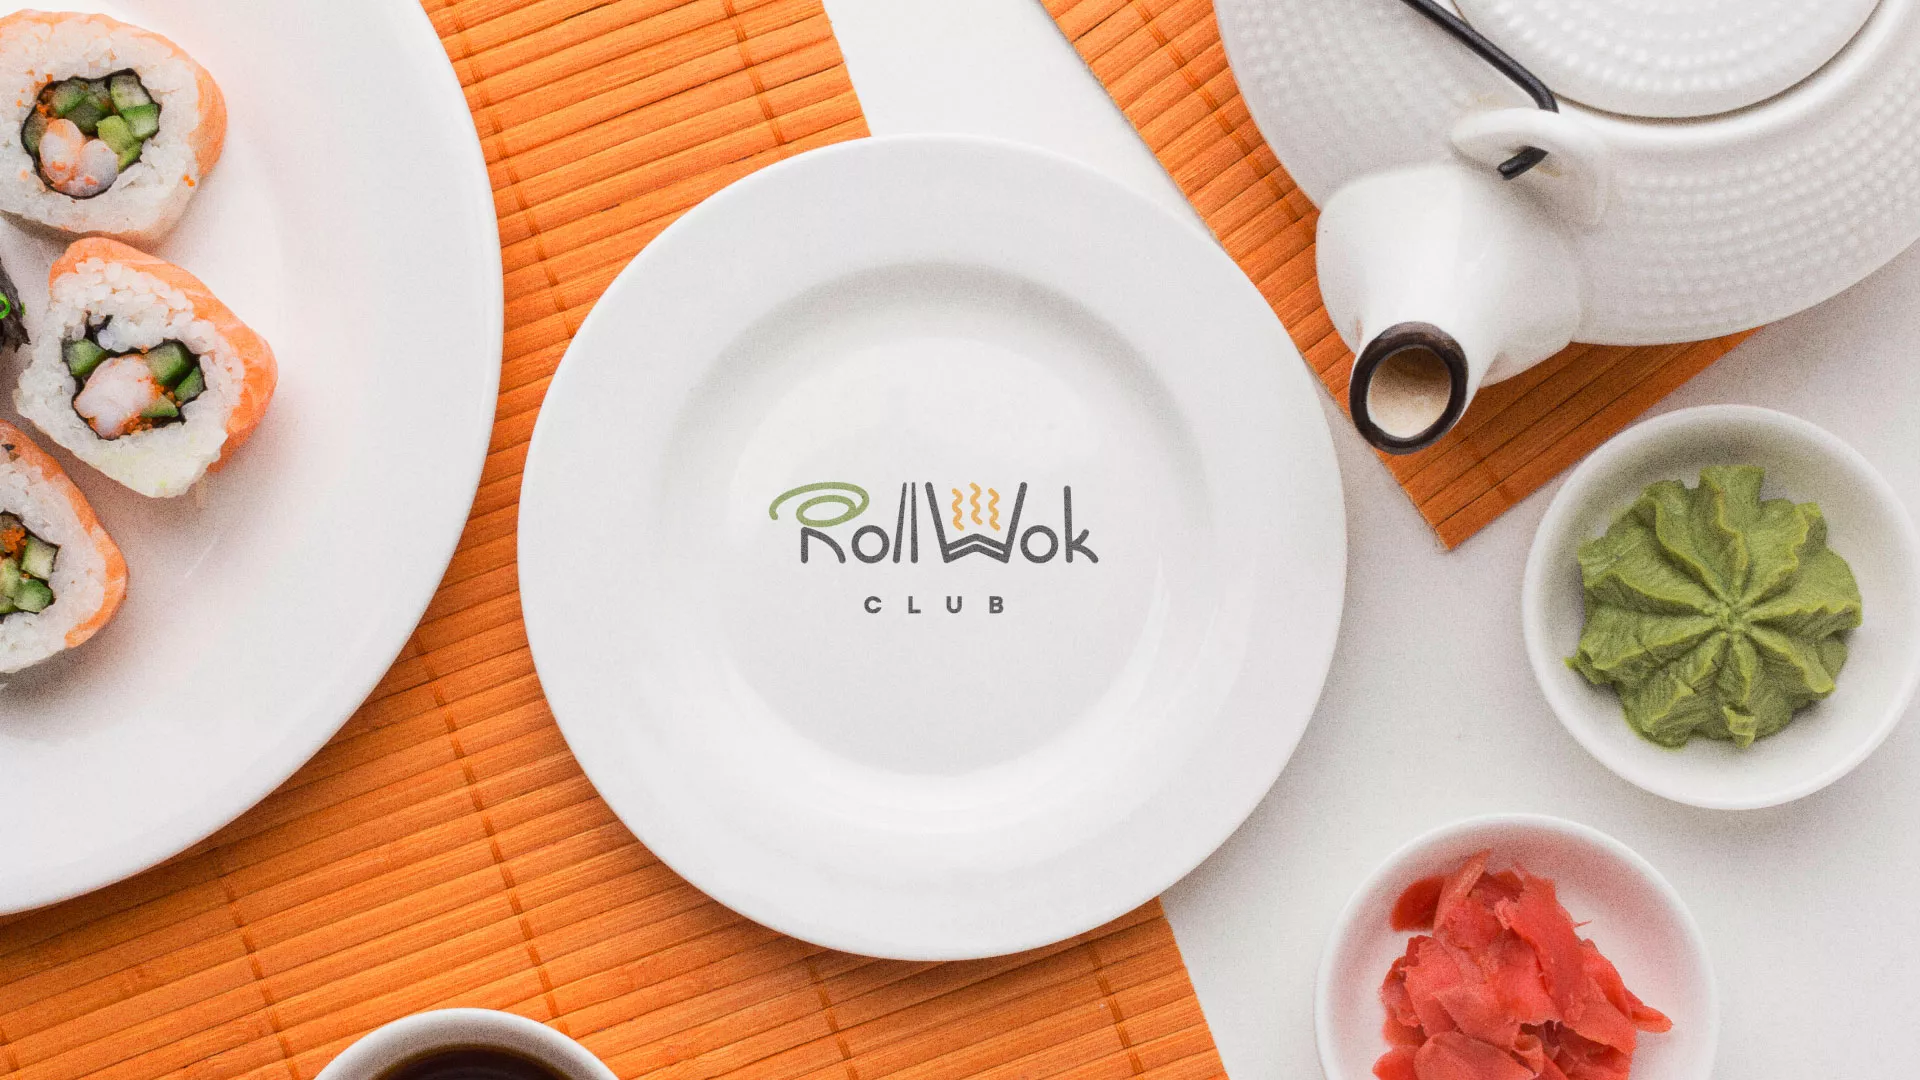 Разработка логотипа и фирменного стиля суши-бара «Roll Wok Club» в Новодвинске